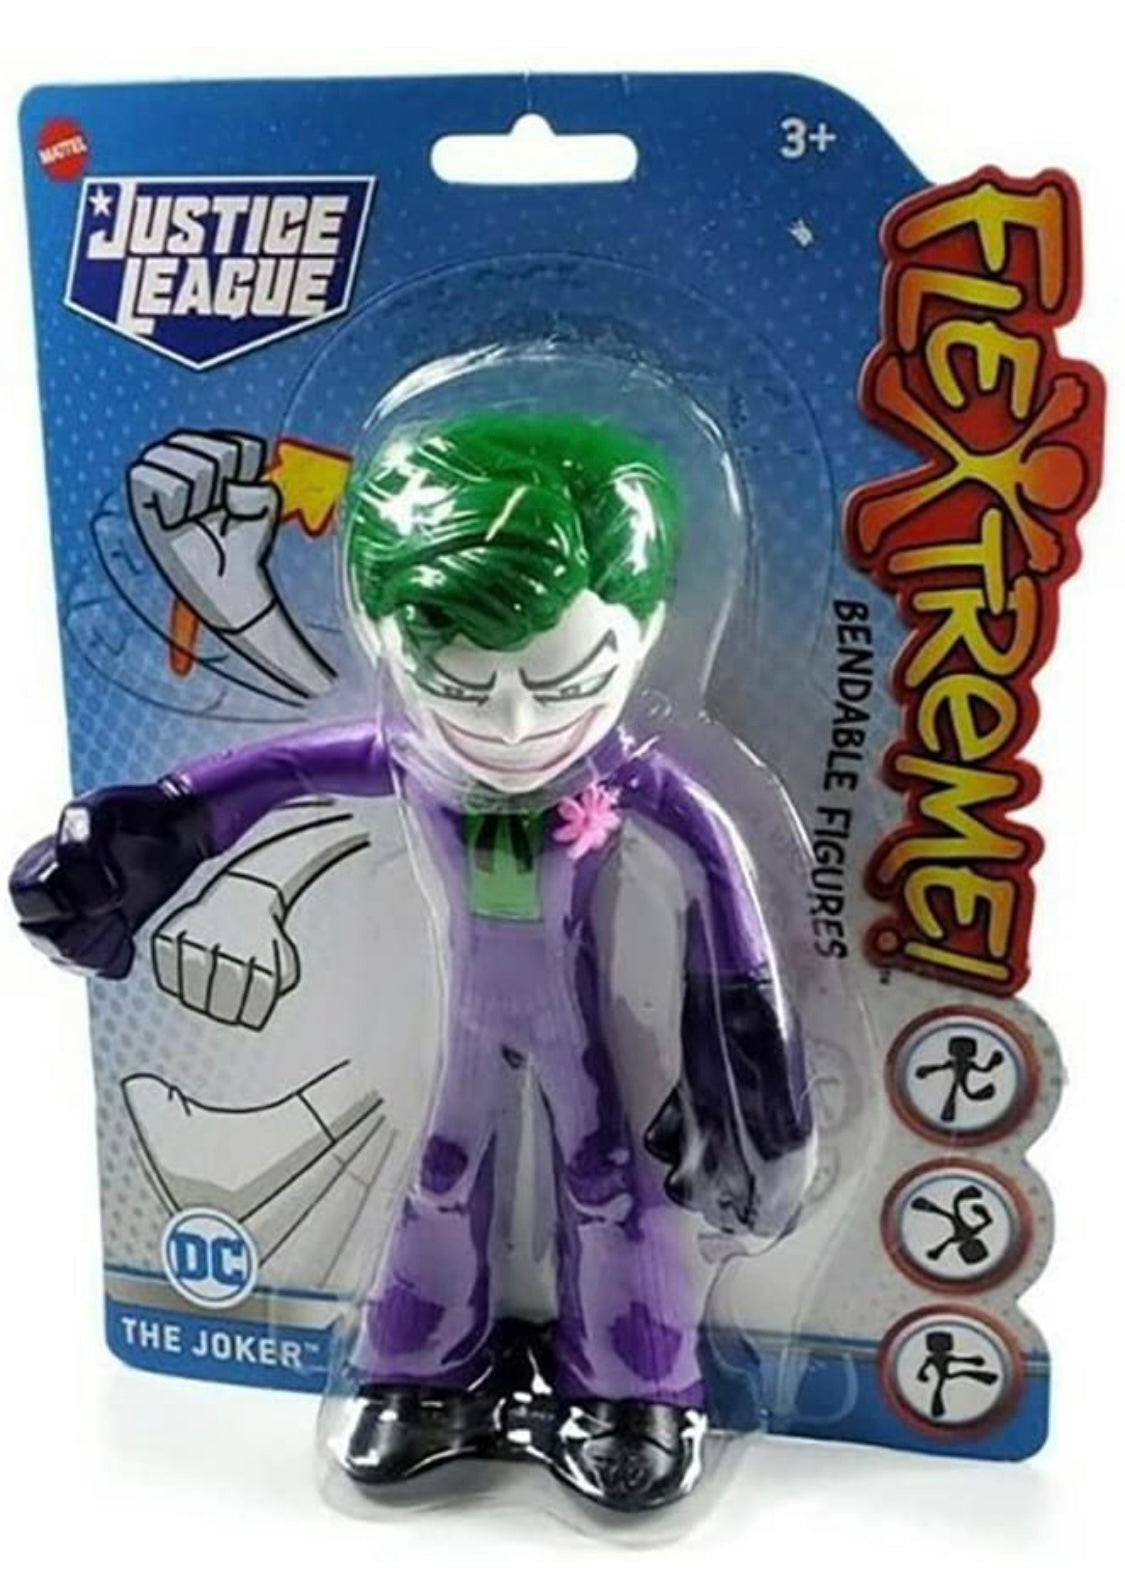 Justice League The Joker